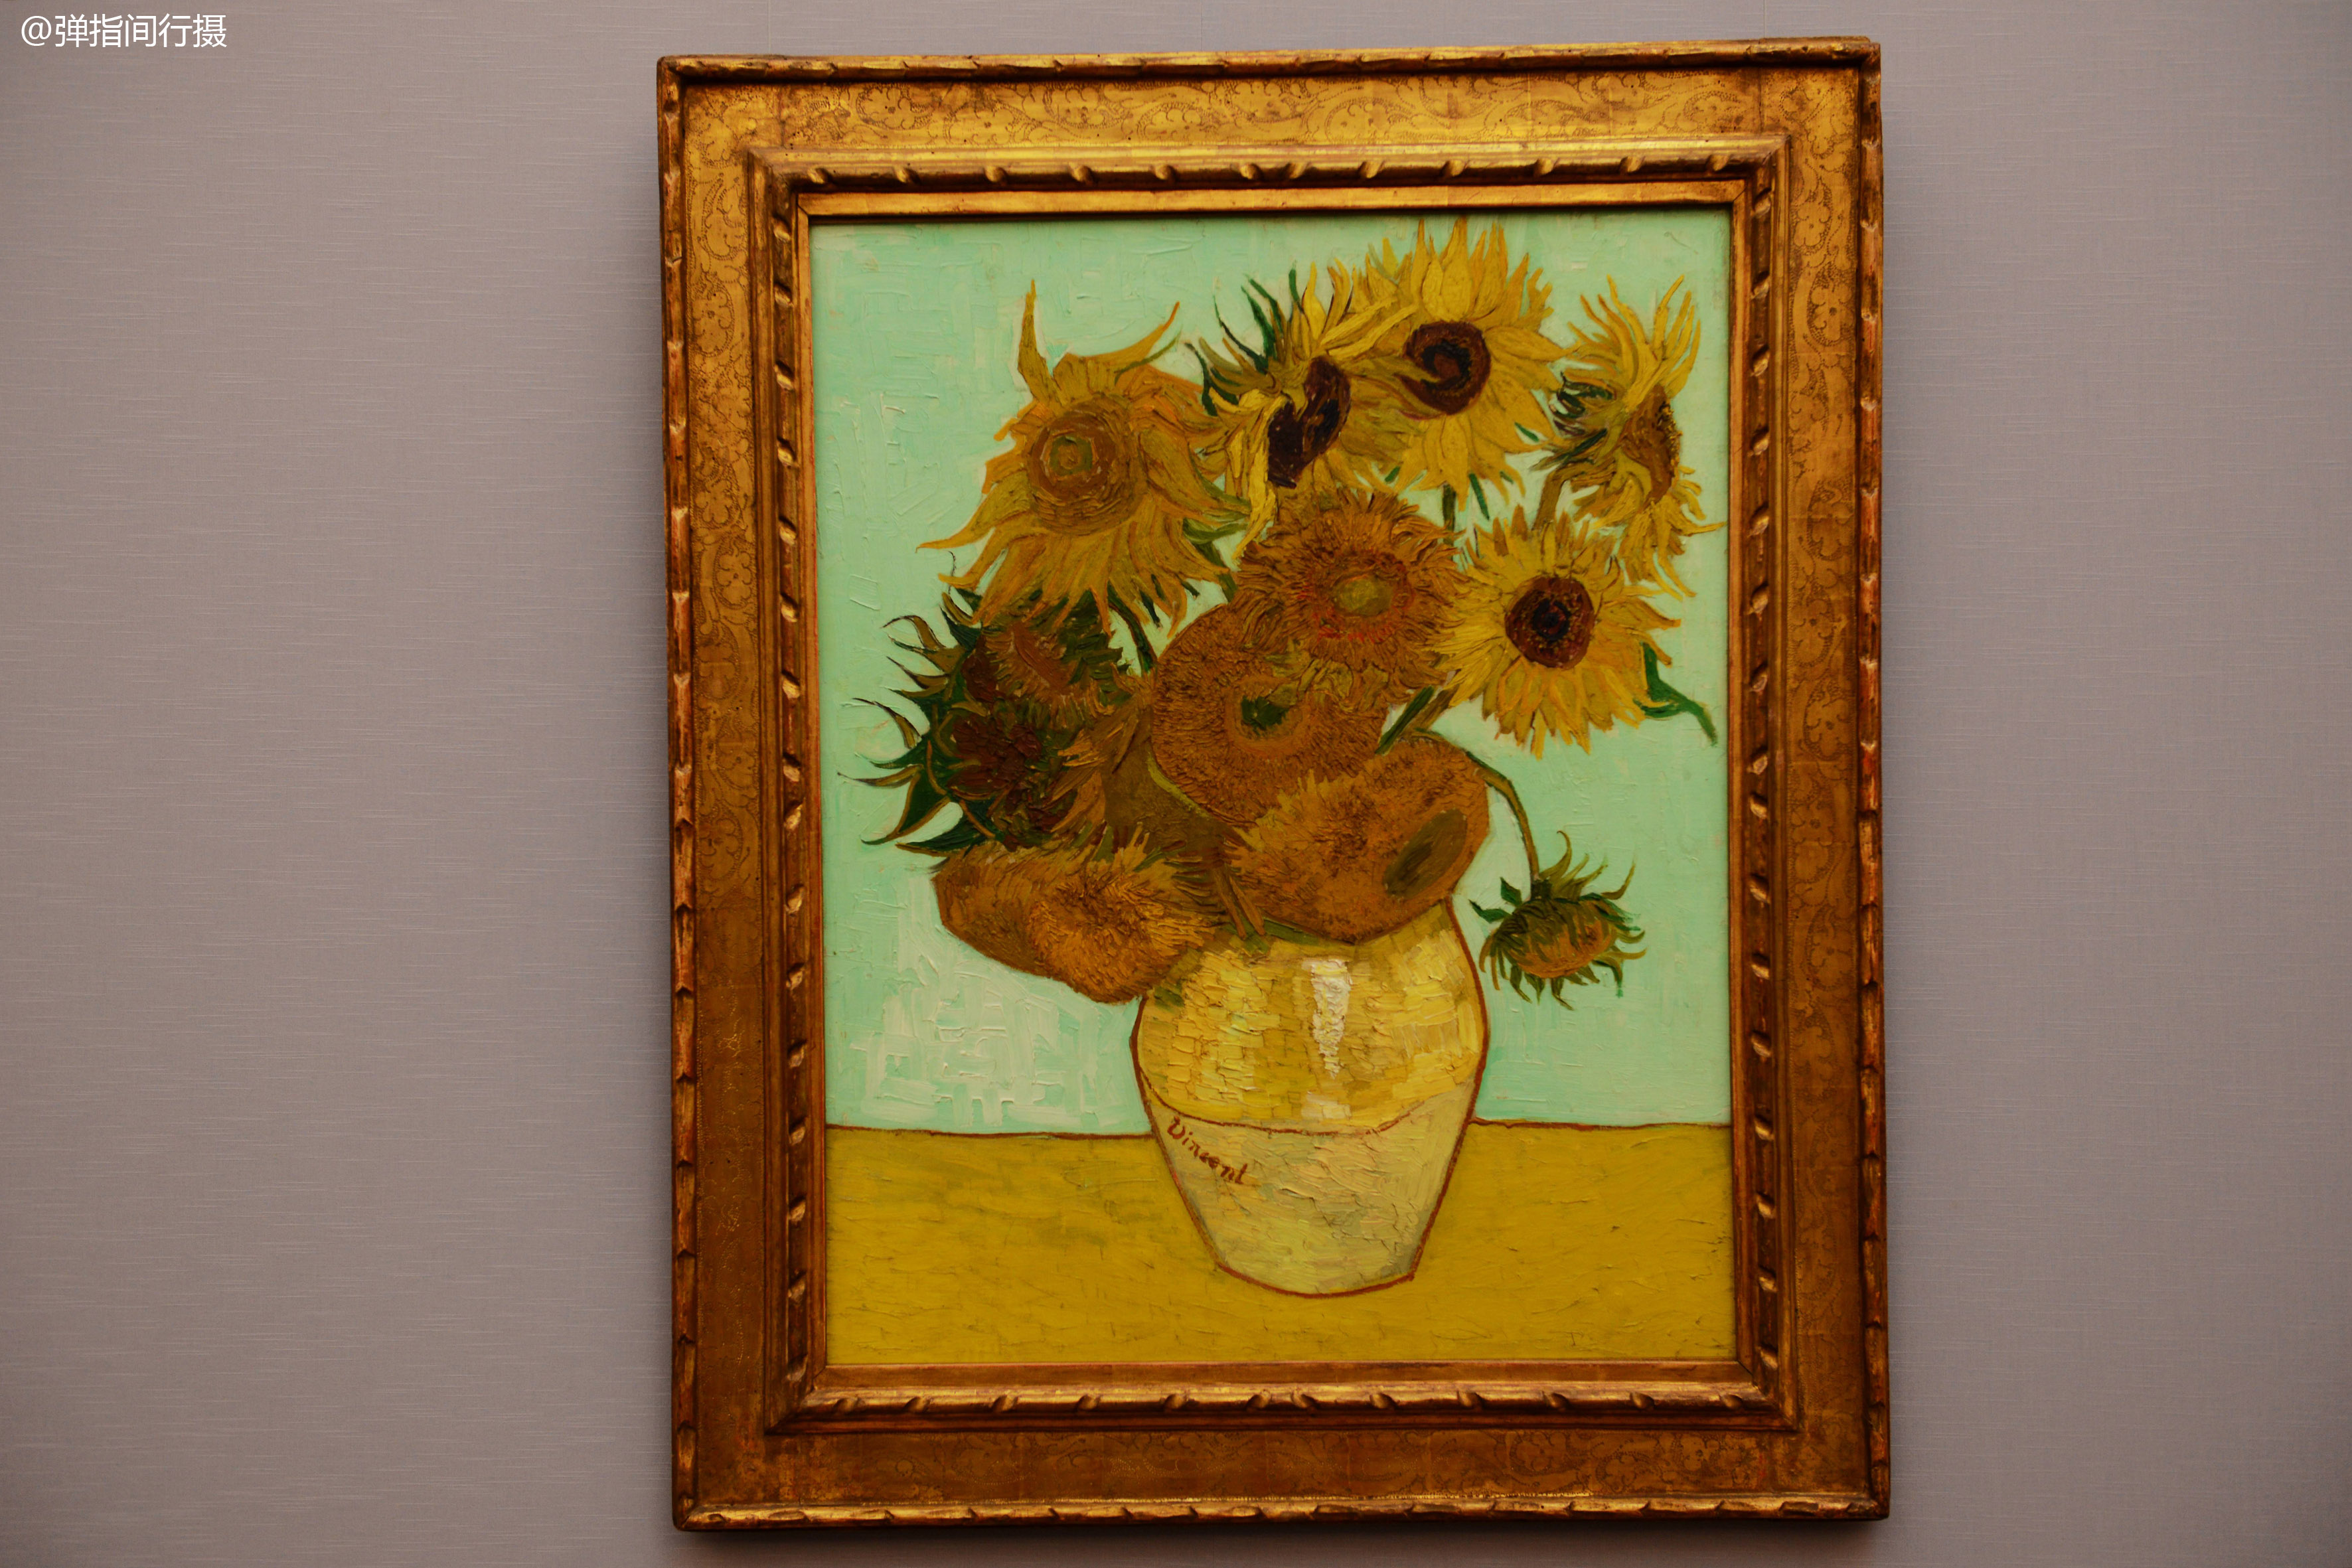 新绘画馆藏有众多的艺术大师名作,最具看点的是梵高的《向日葵》